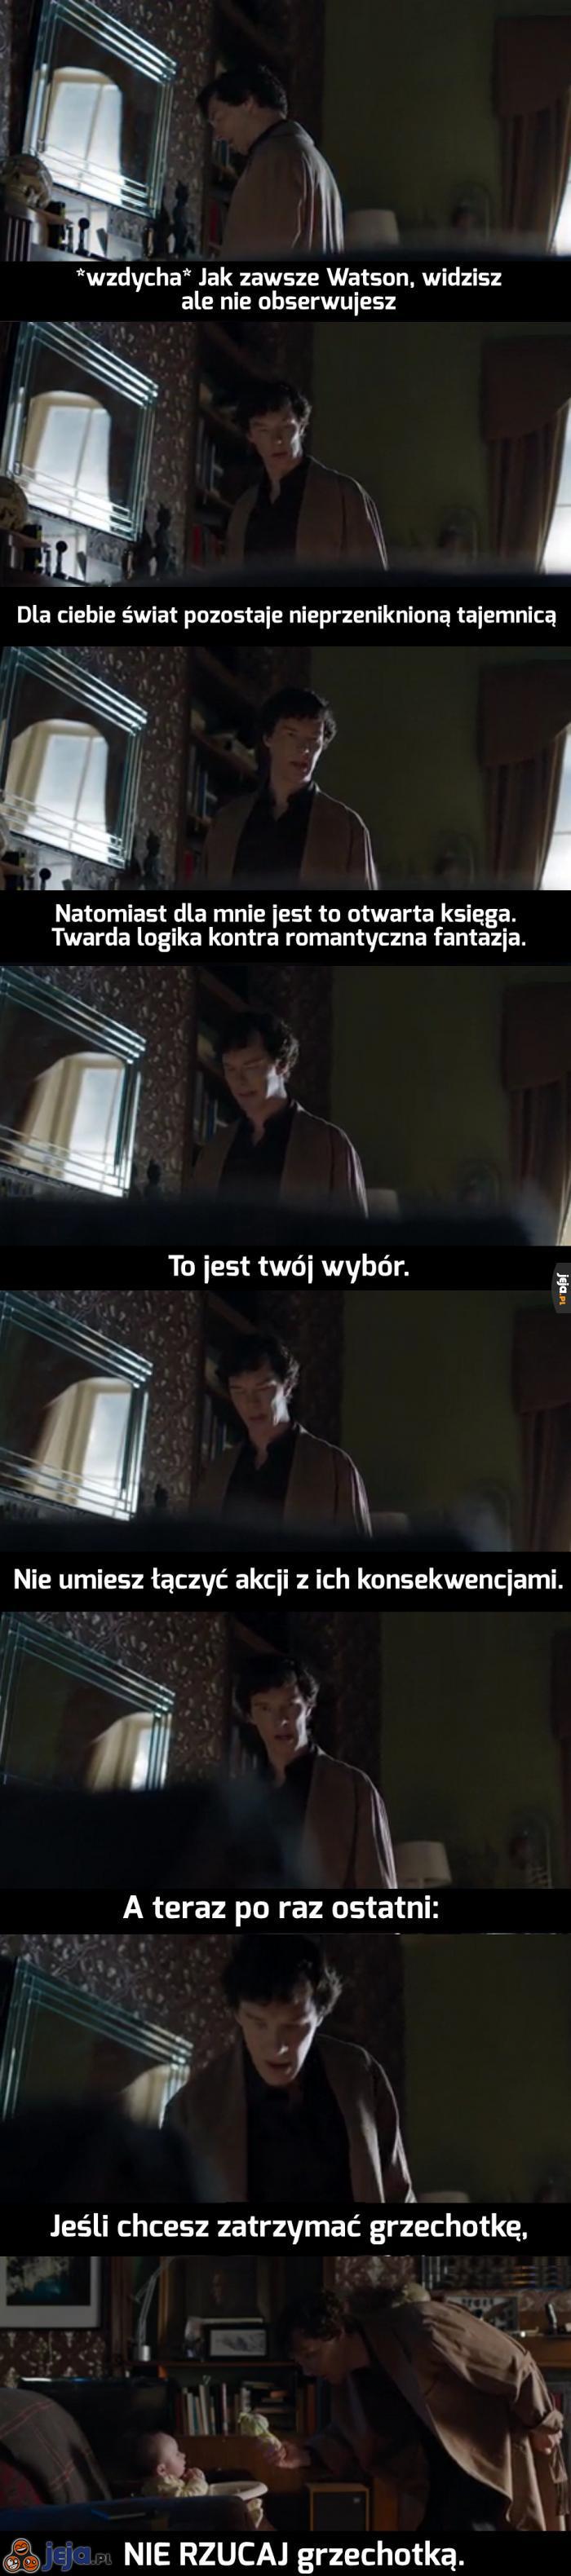 Sherlock i grzechotka